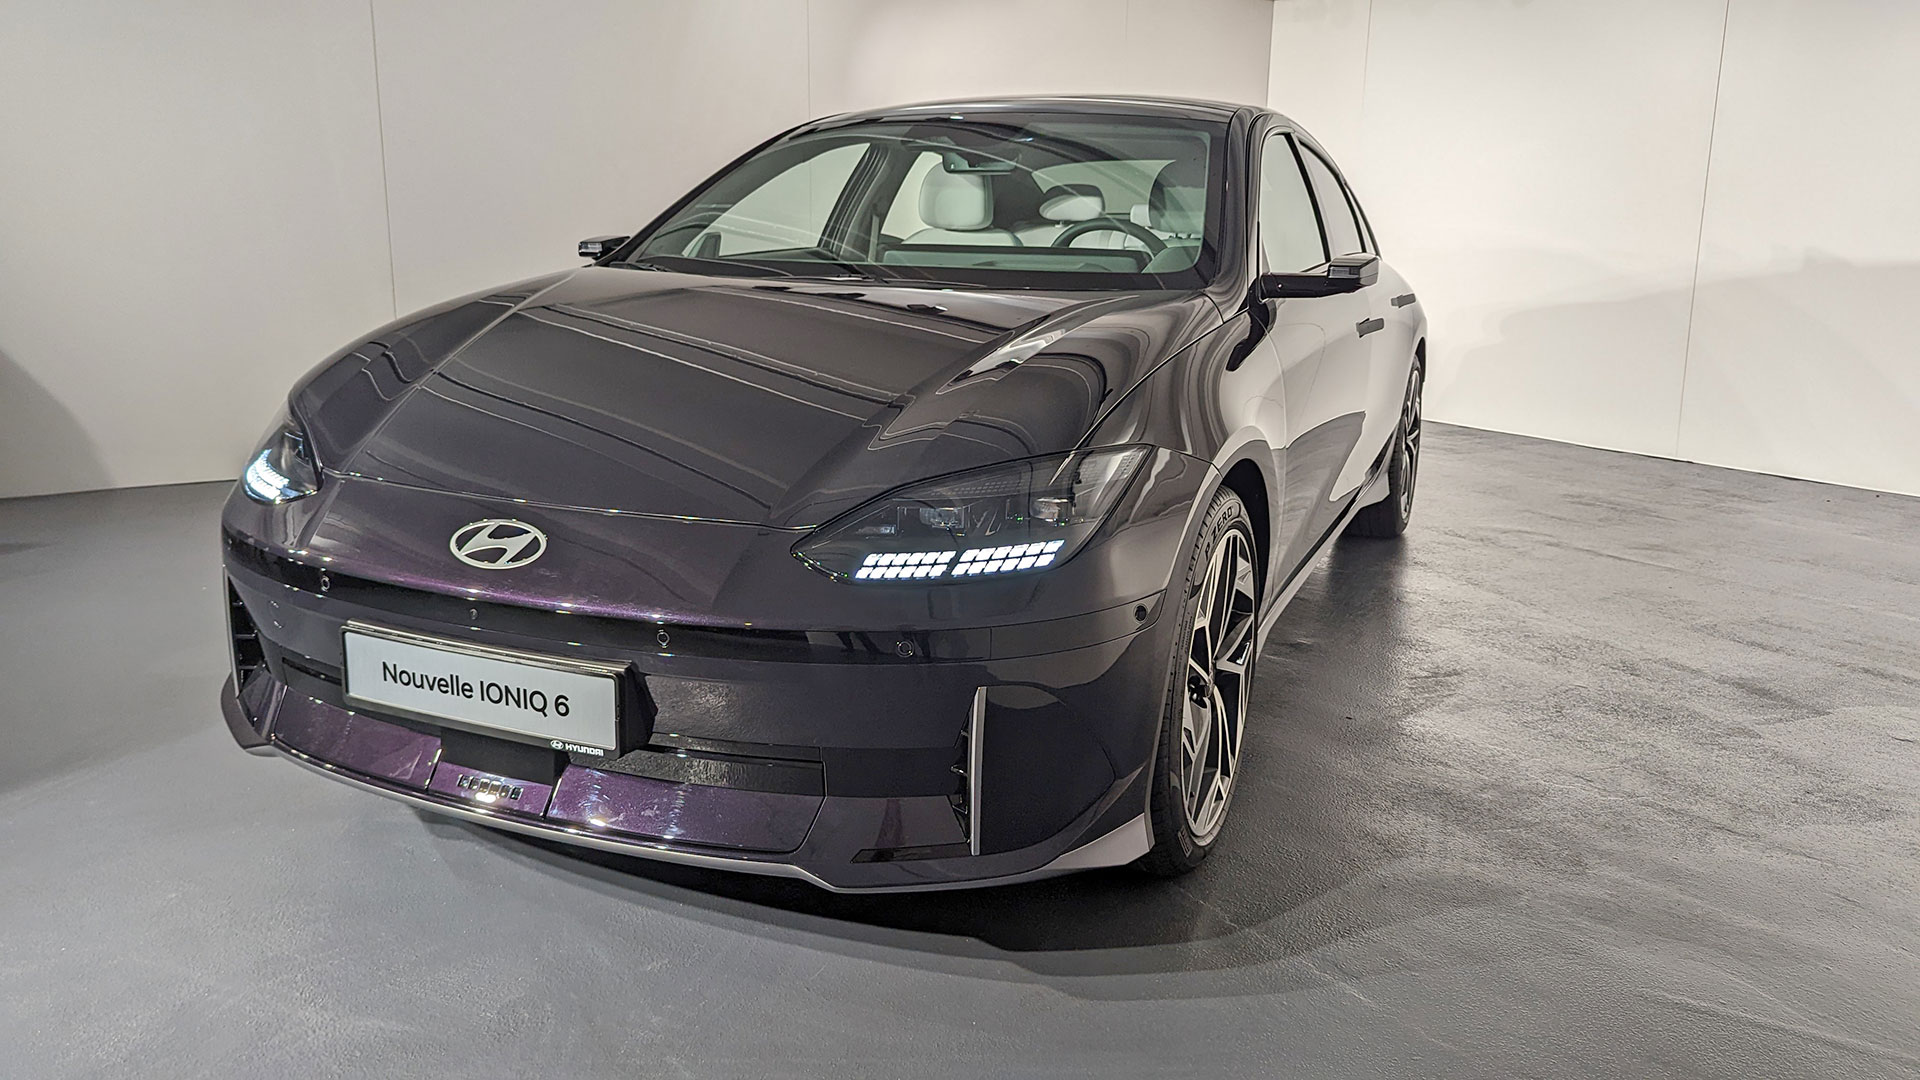 Essai Hyundai Ioniq 6 : notre avis complet sur cette voiture électrique